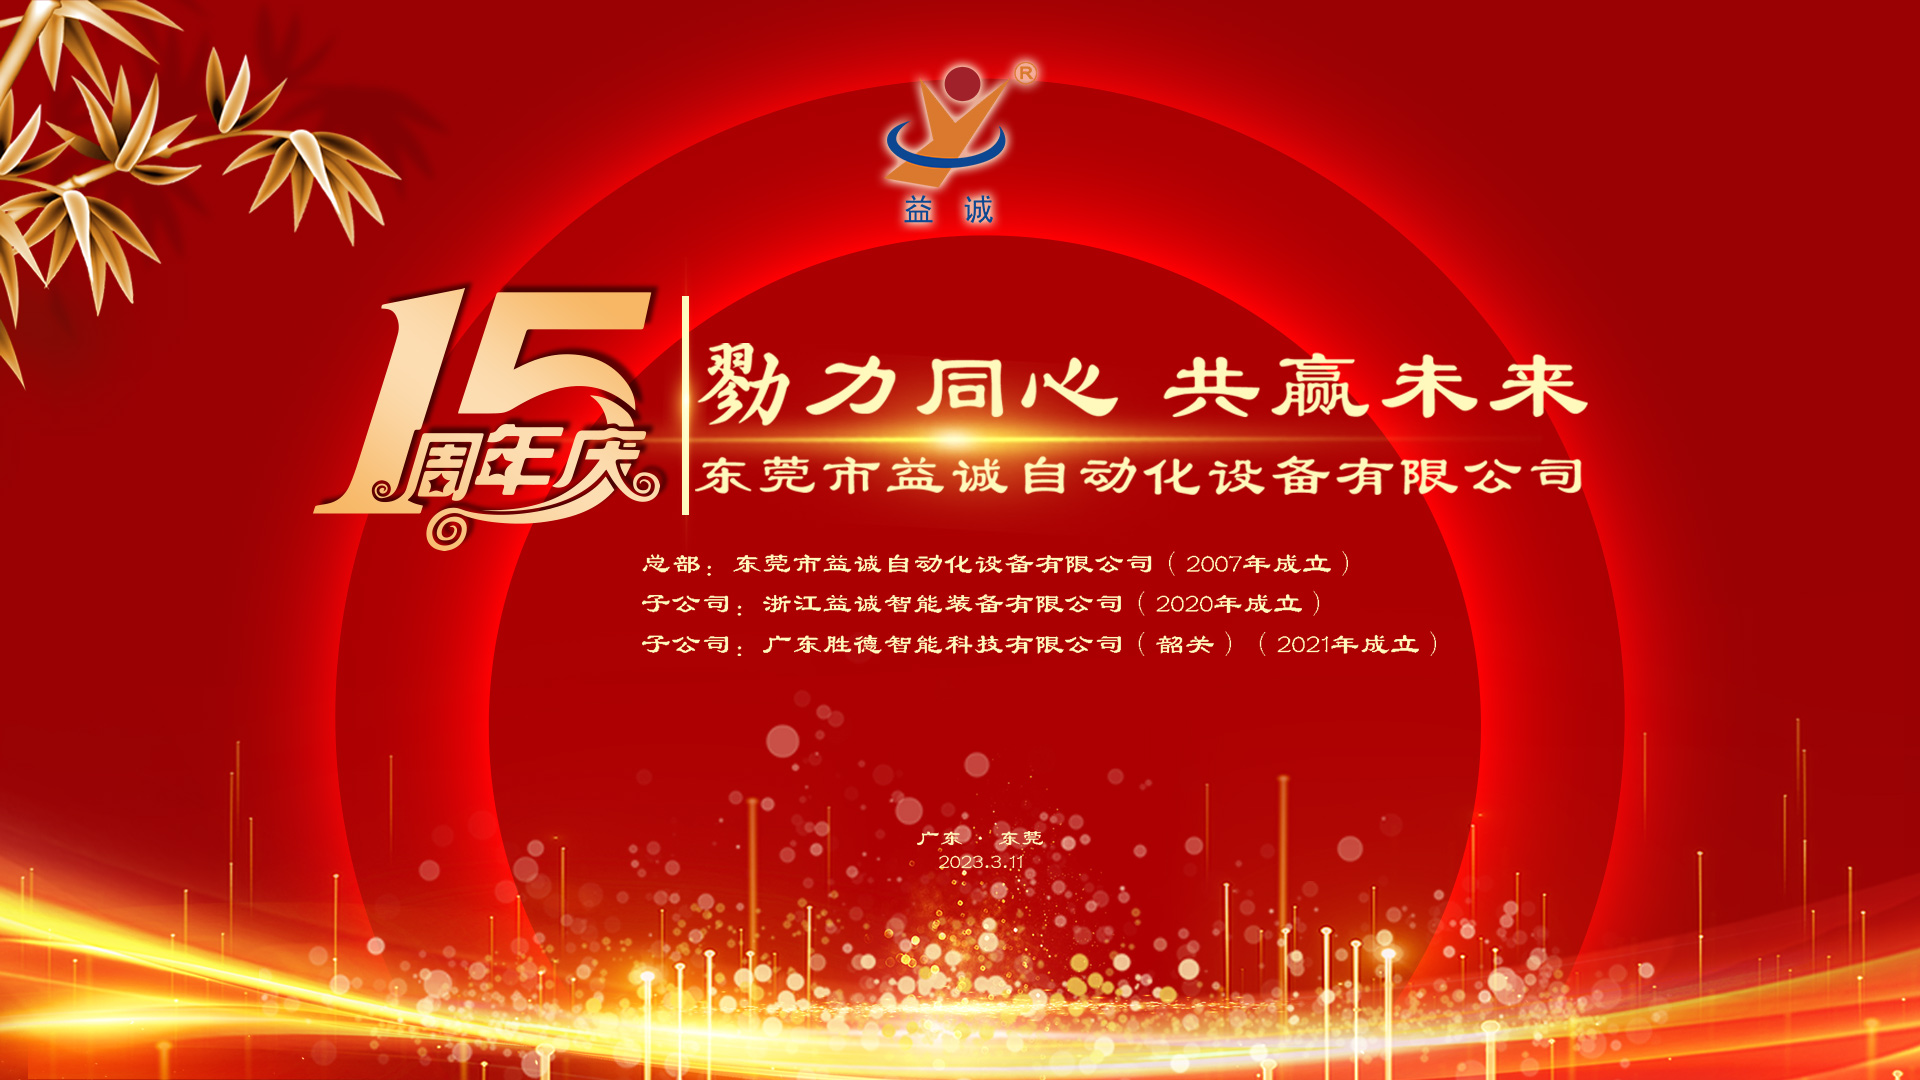 【勠力同心 共赢未来】香港35图库十五周年庆典隆重举办！